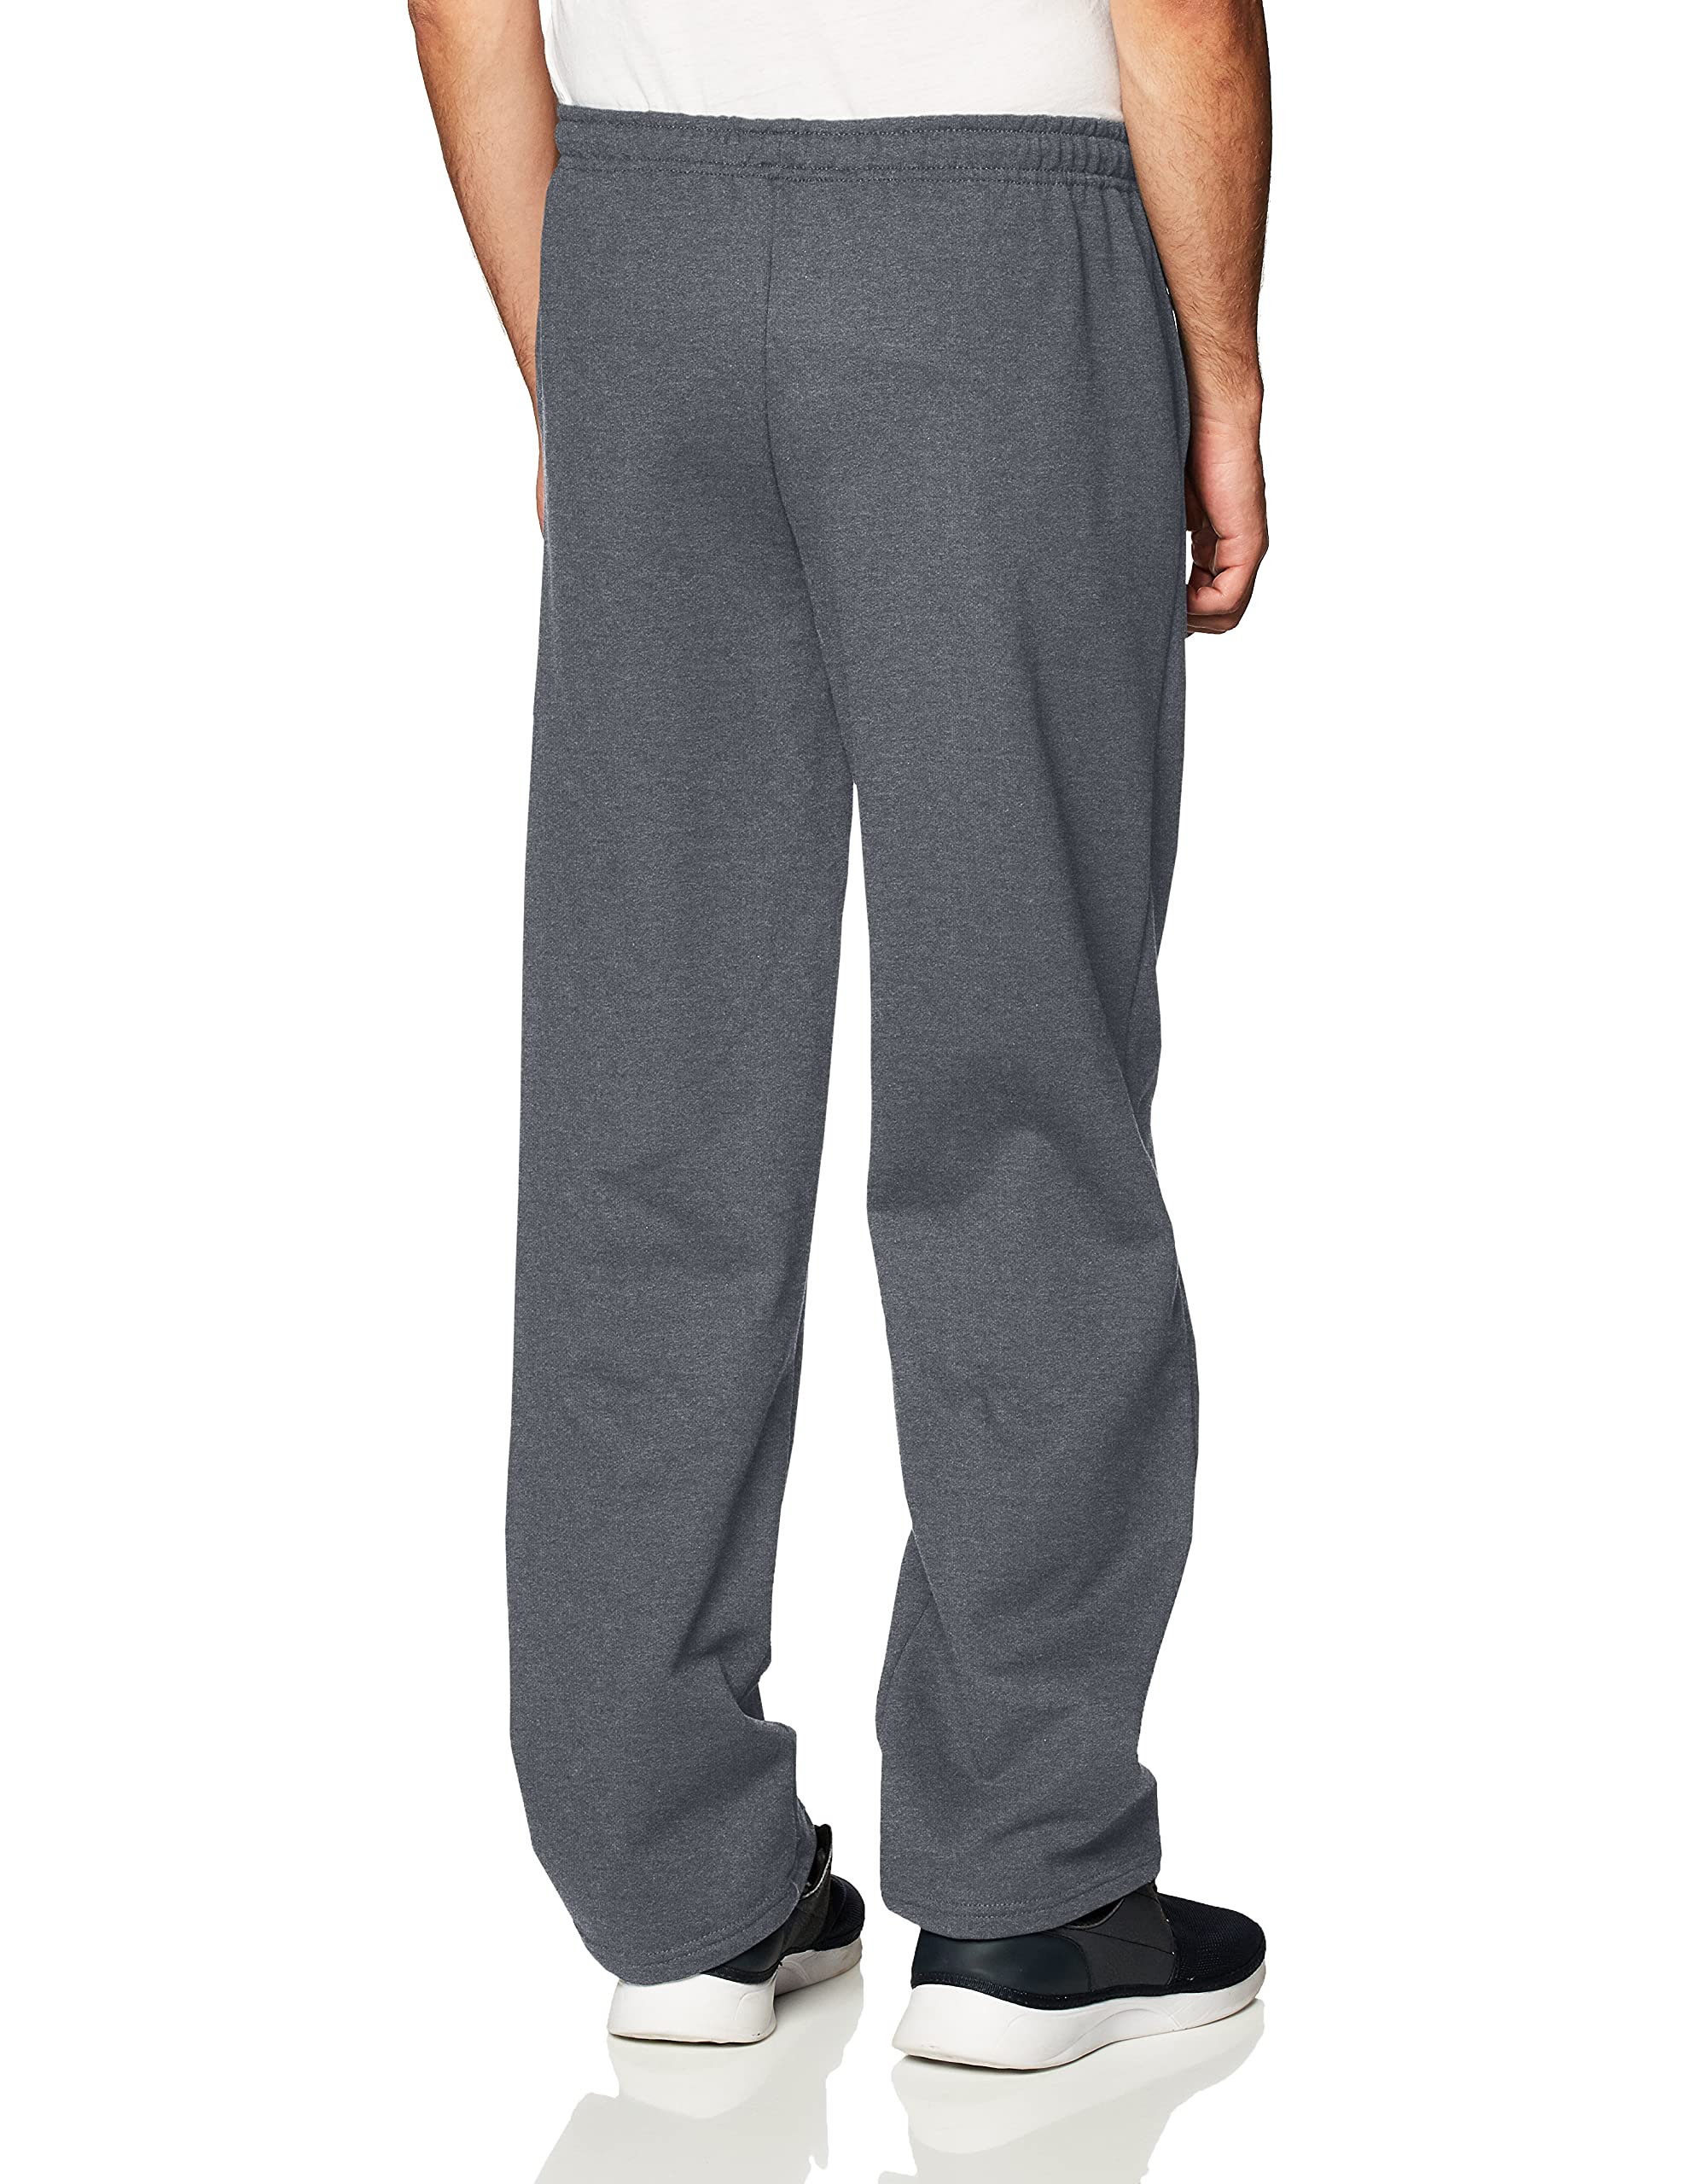 Gildan Adult Fleece Open Bottom Sweatpants with Pockets, Style G18300